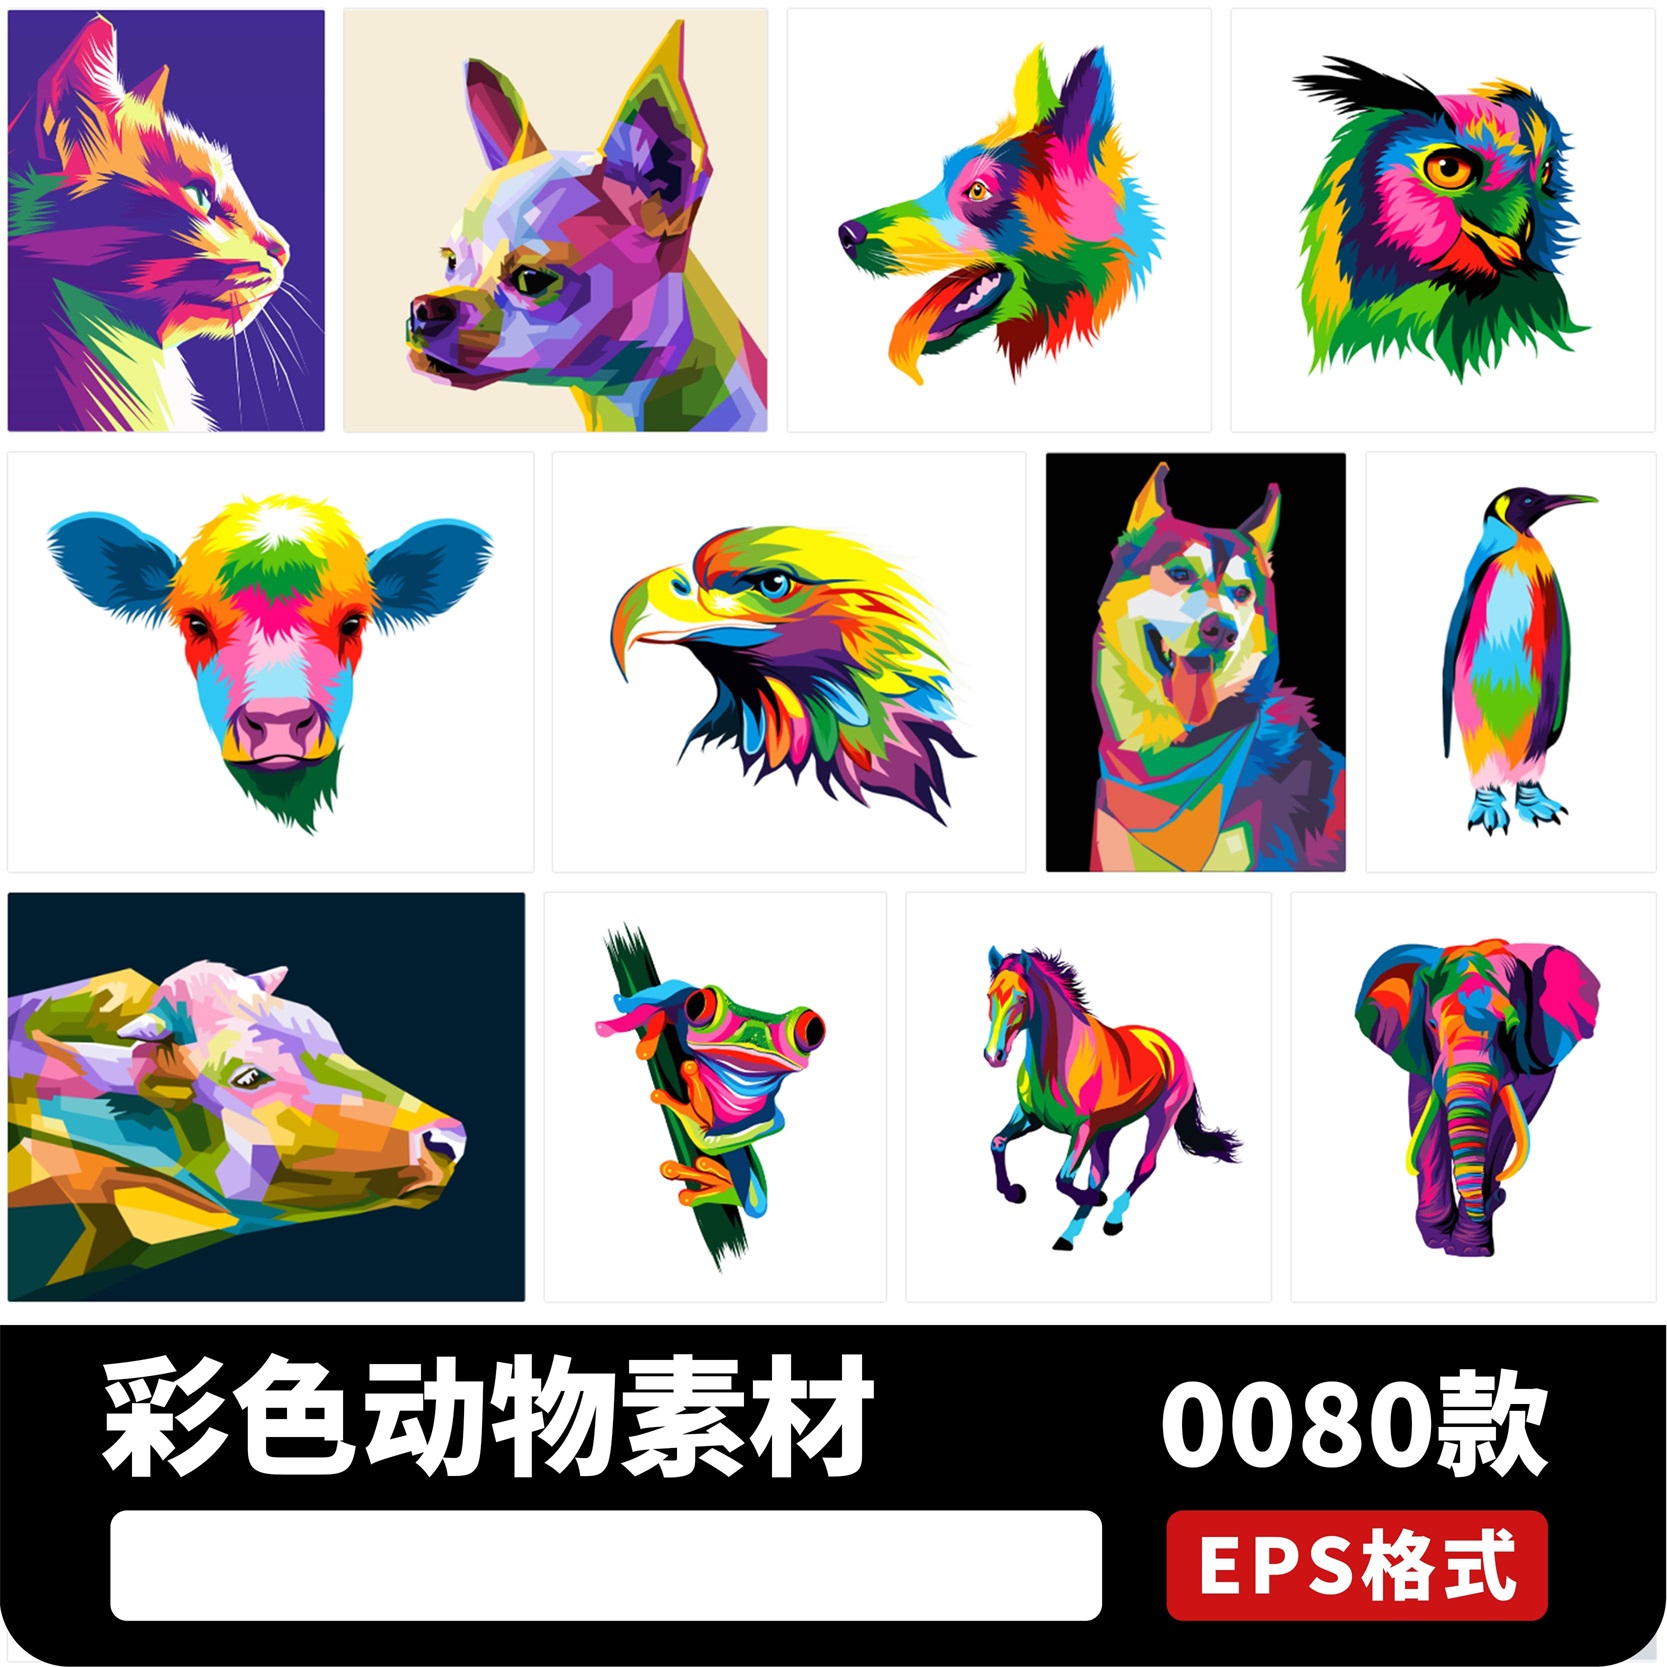 彩绘几何波普艺术风格彩色动物家禽抽象插画AI矢量设计素材模板